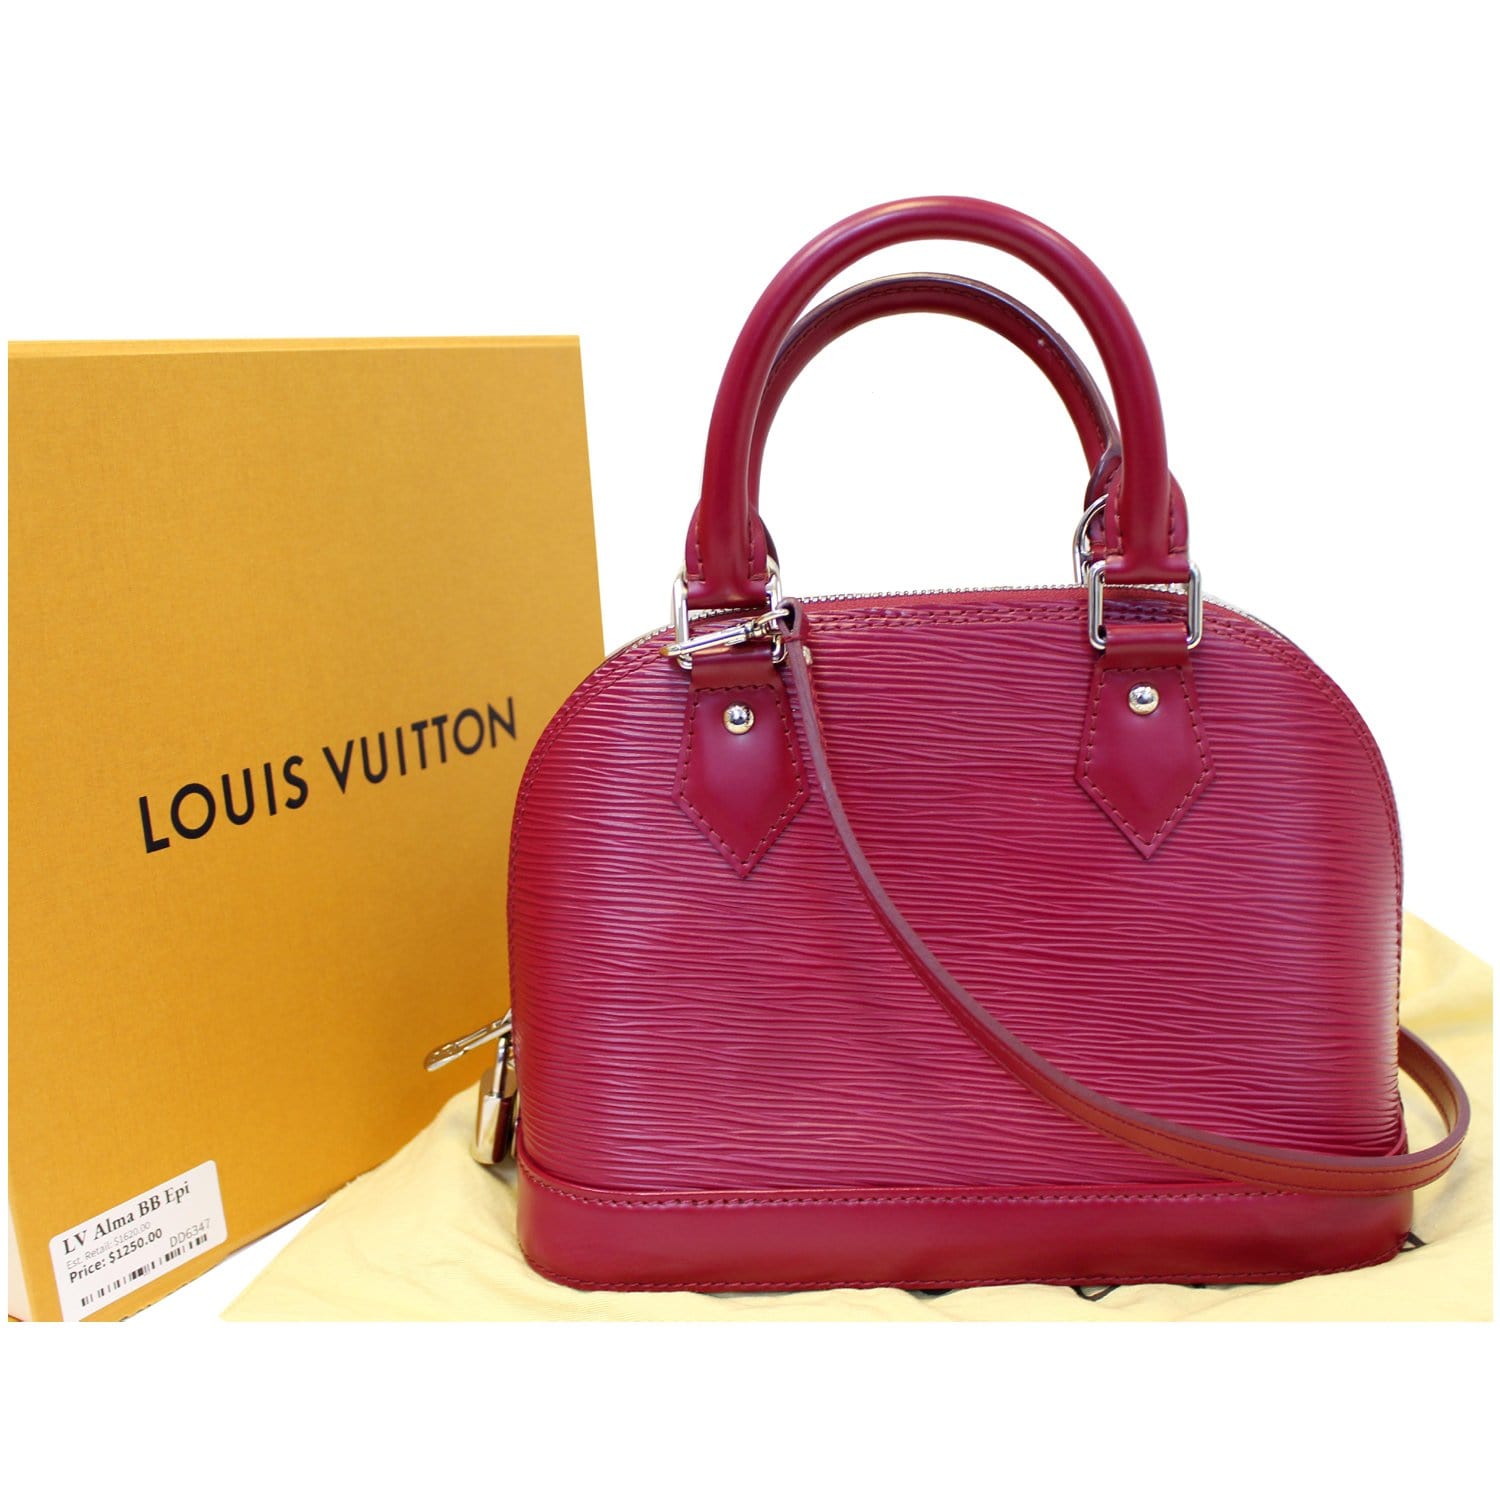 Louis Vuitton Alma Bb Epi Leather Price Listed